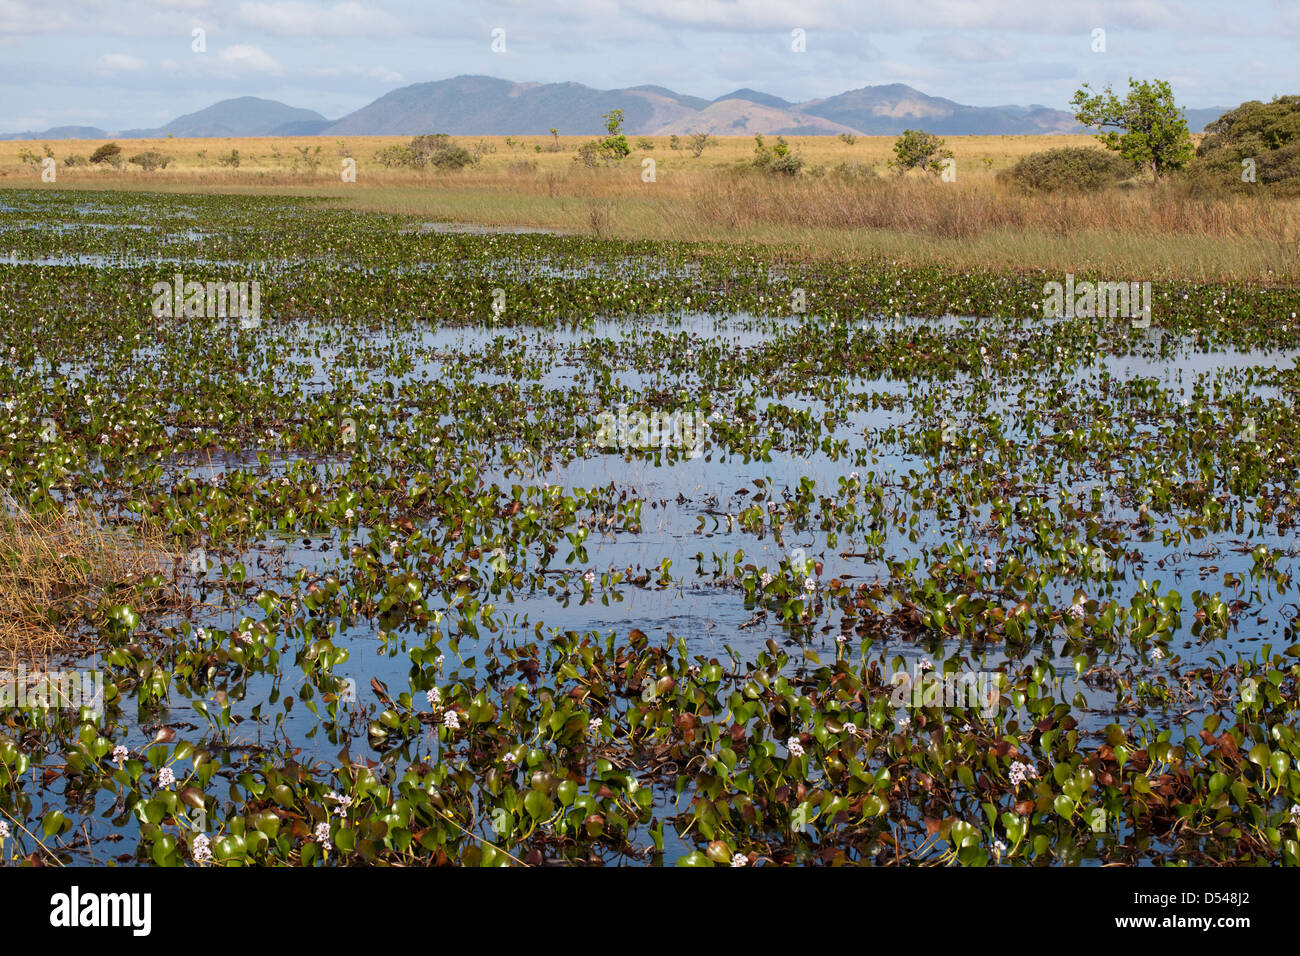 Karanambu Ranch. Lacs et marécages saisonniers sur le Rupununi Savannah. Jacinthe d'eau (Eichhornia sp. ) Avant-plan. La Guyana. L'Amérique du Sud. Banque D'Images